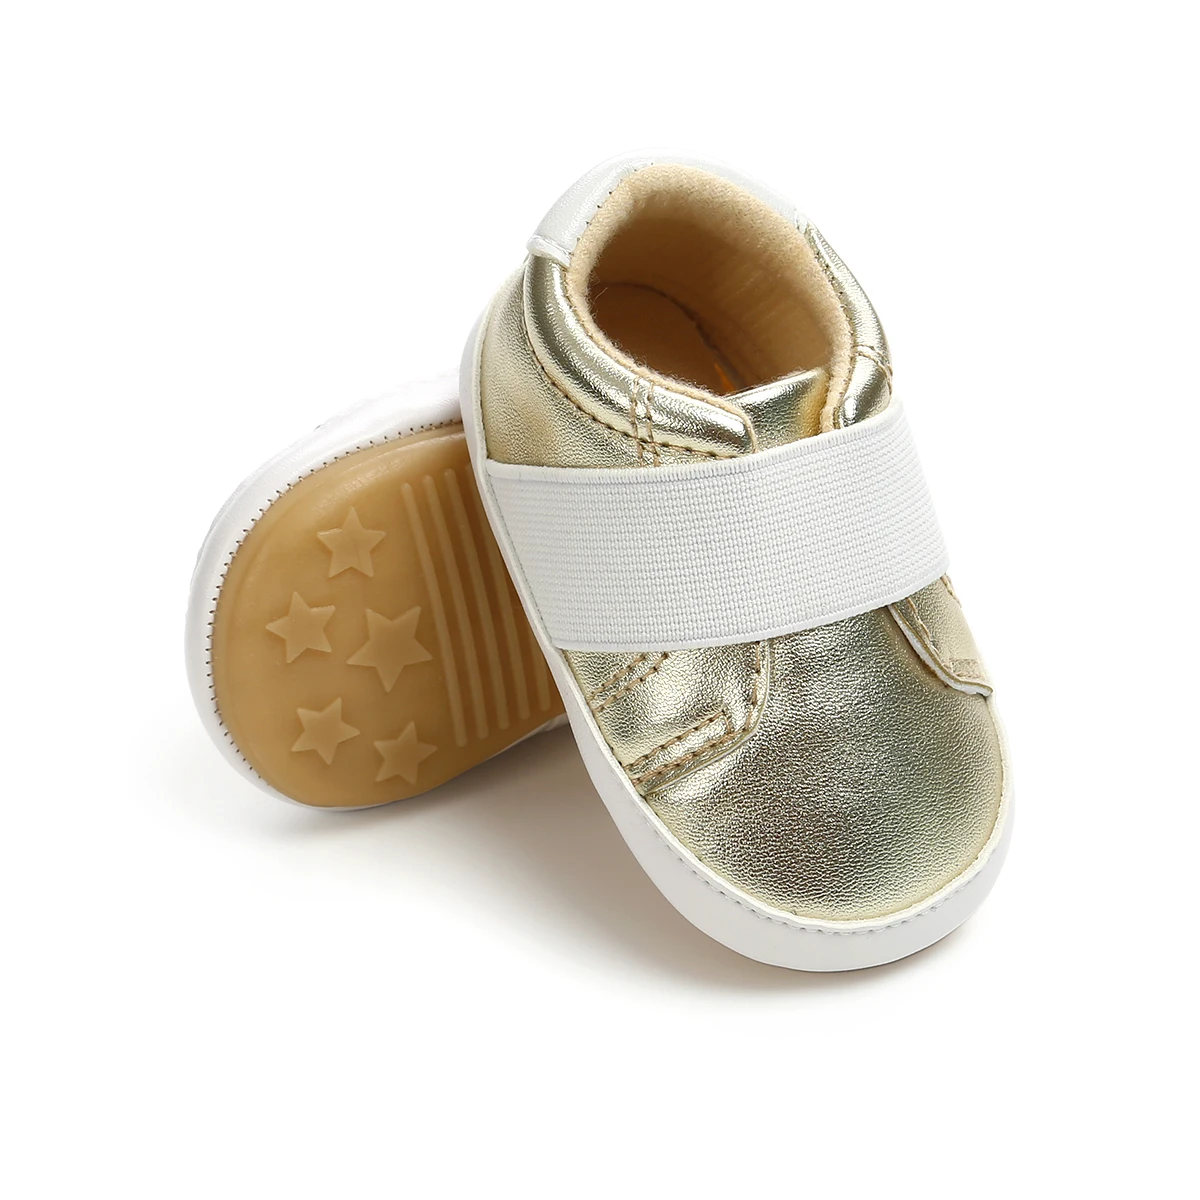 Уникальная милая детская обувь в горошек для малышей, малышей с бантом-бабочкой для детей 0-15 месяцев